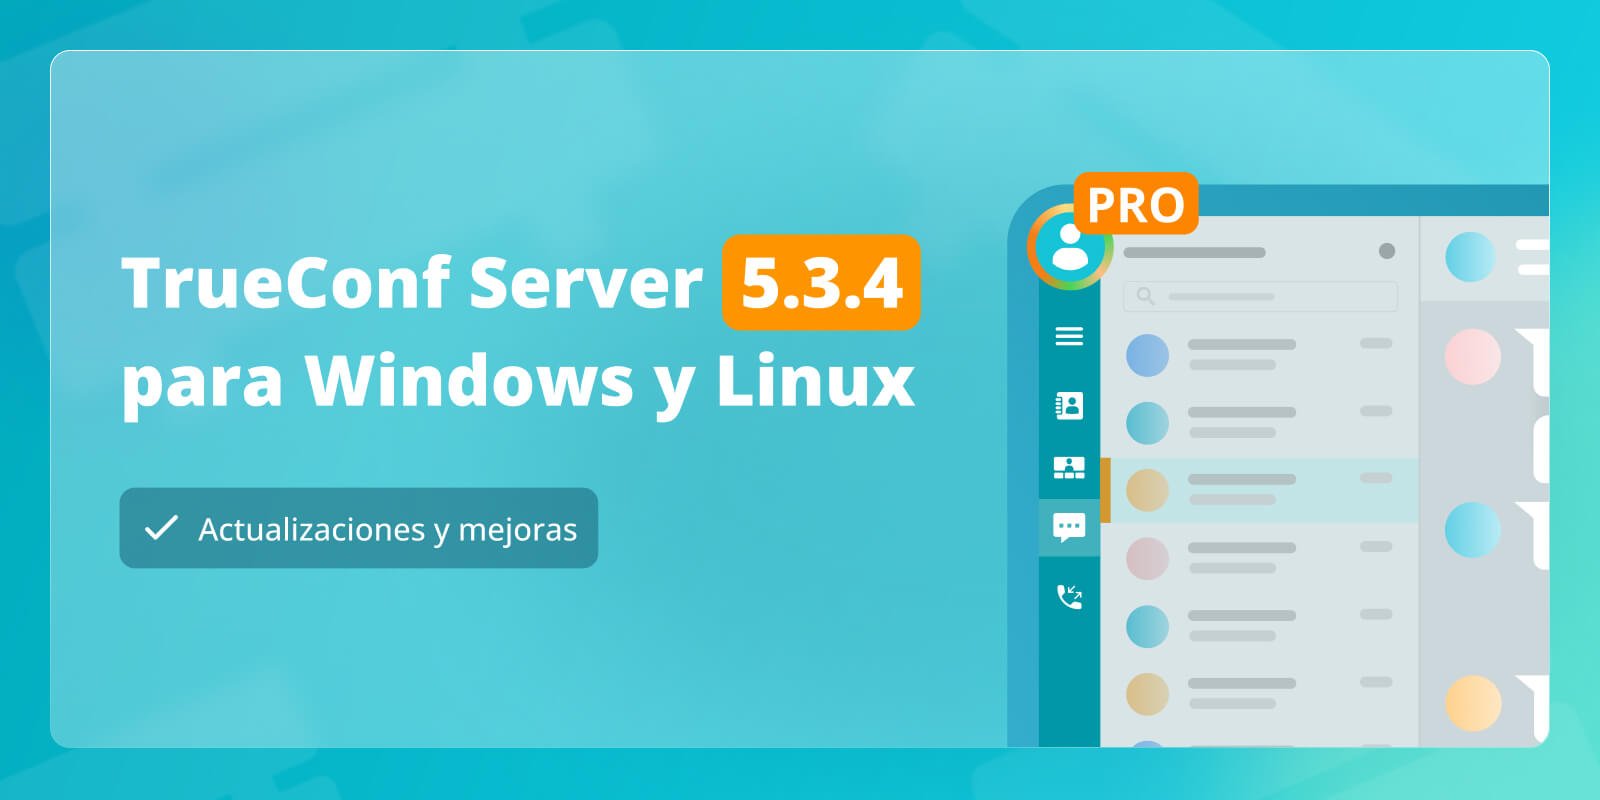 TrueConf Server 5.3.4: actualizaciones y mejoras 2